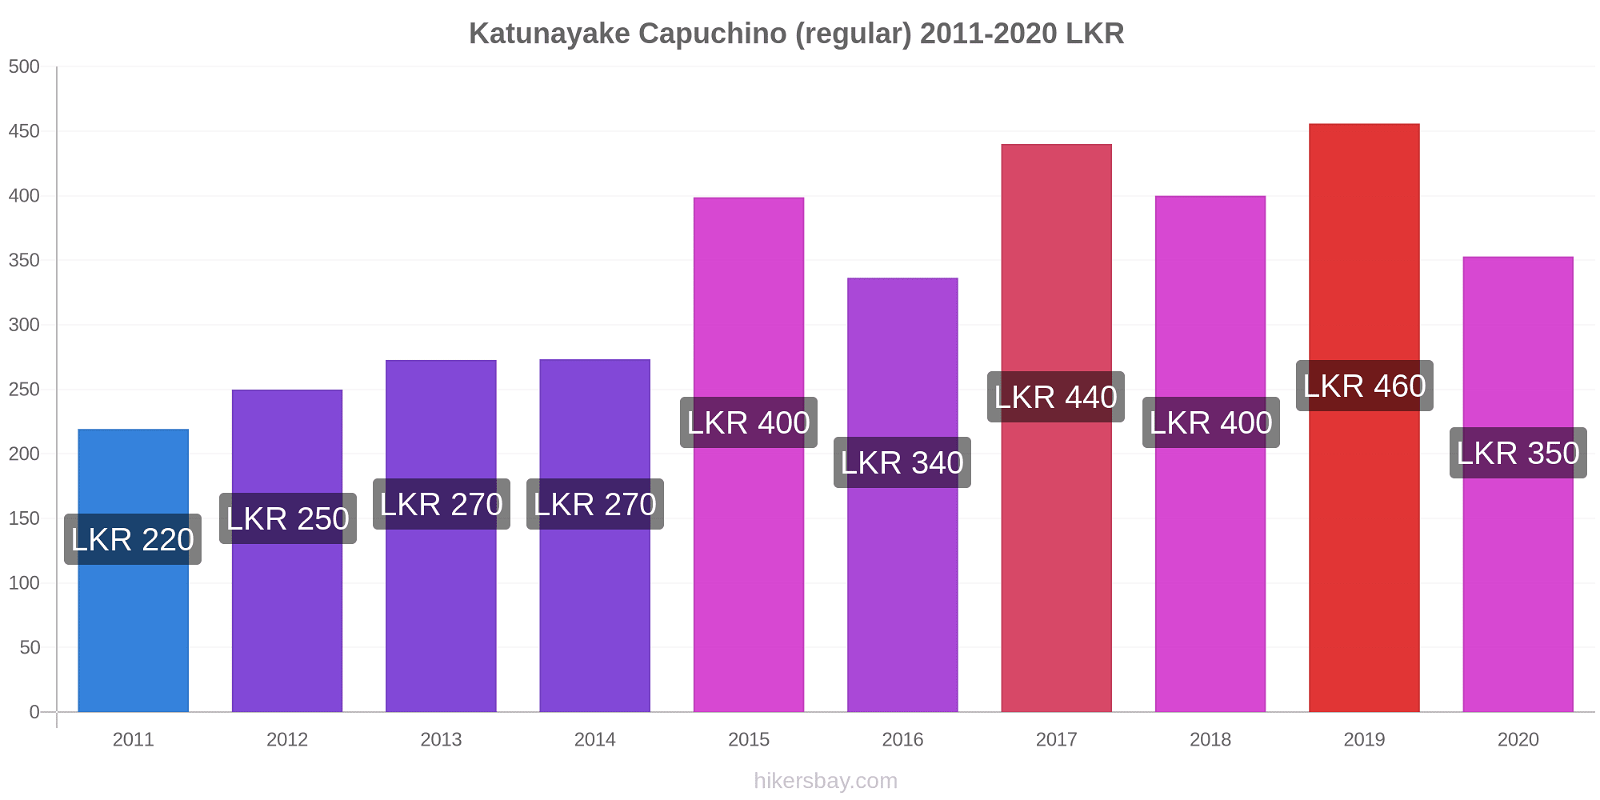 Katunayake cambios de precios Capuchino (regular) hikersbay.com